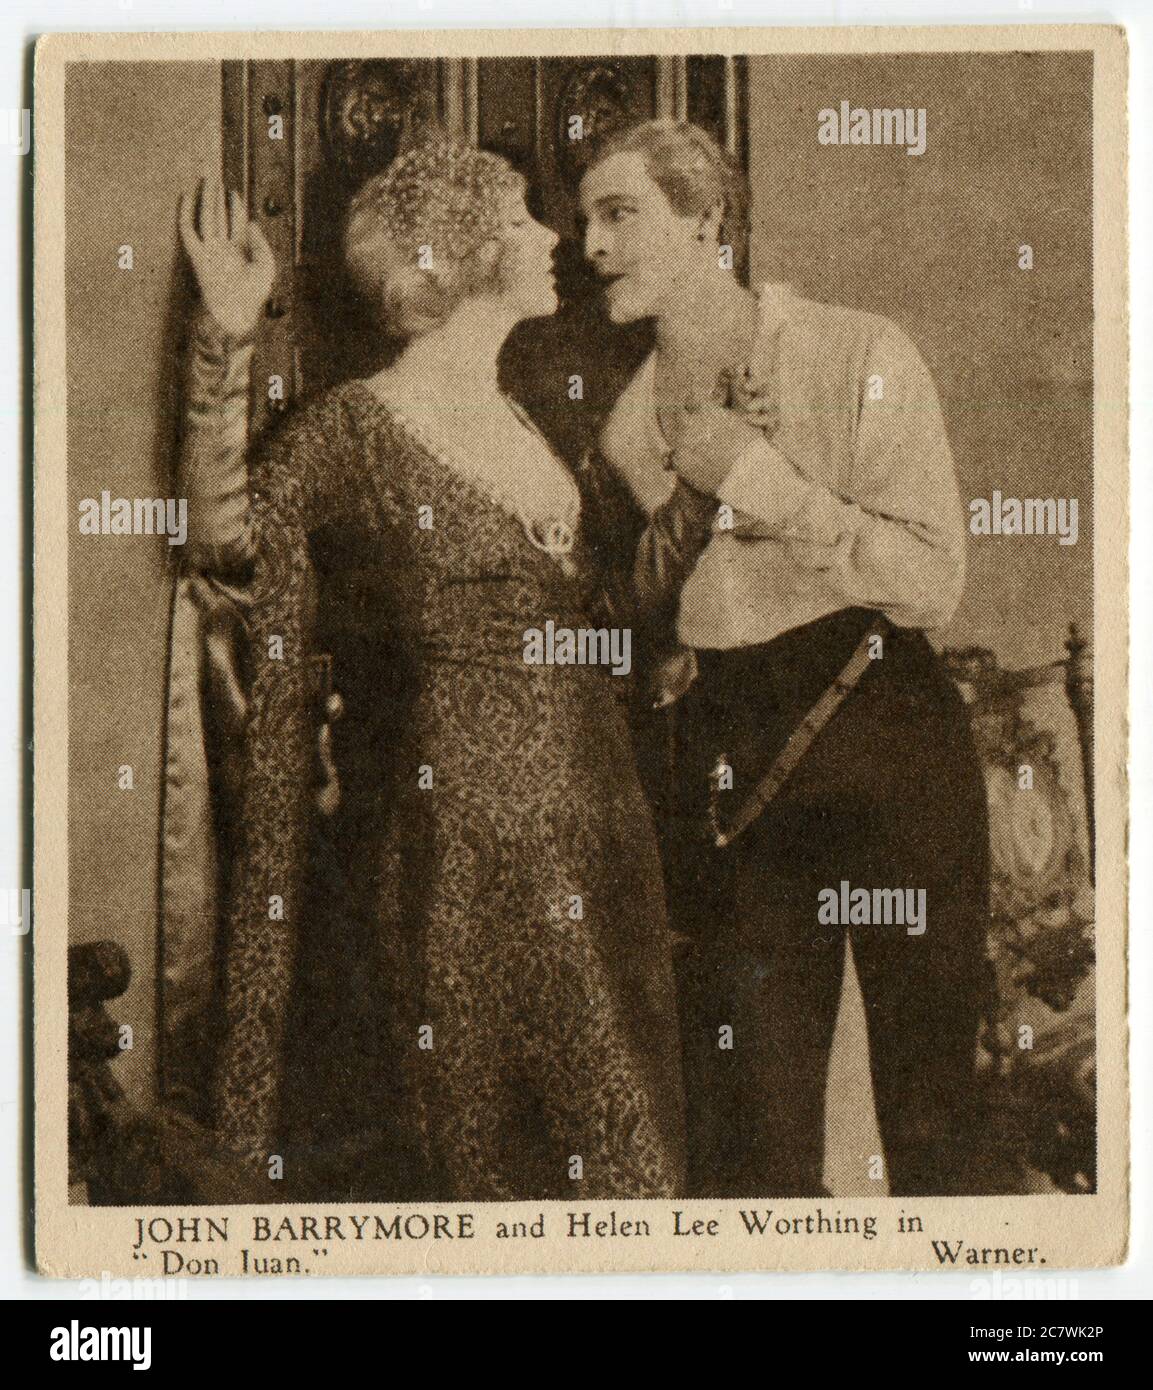 Carte à cigarettes Kensitas « Love Scenes from Famous films » - John Barrymore et Helen Lee Worthing dans « Don Juan ». Deuxième série publiée en 1932 par J. Wix & Sons Ltd Banque D'Images